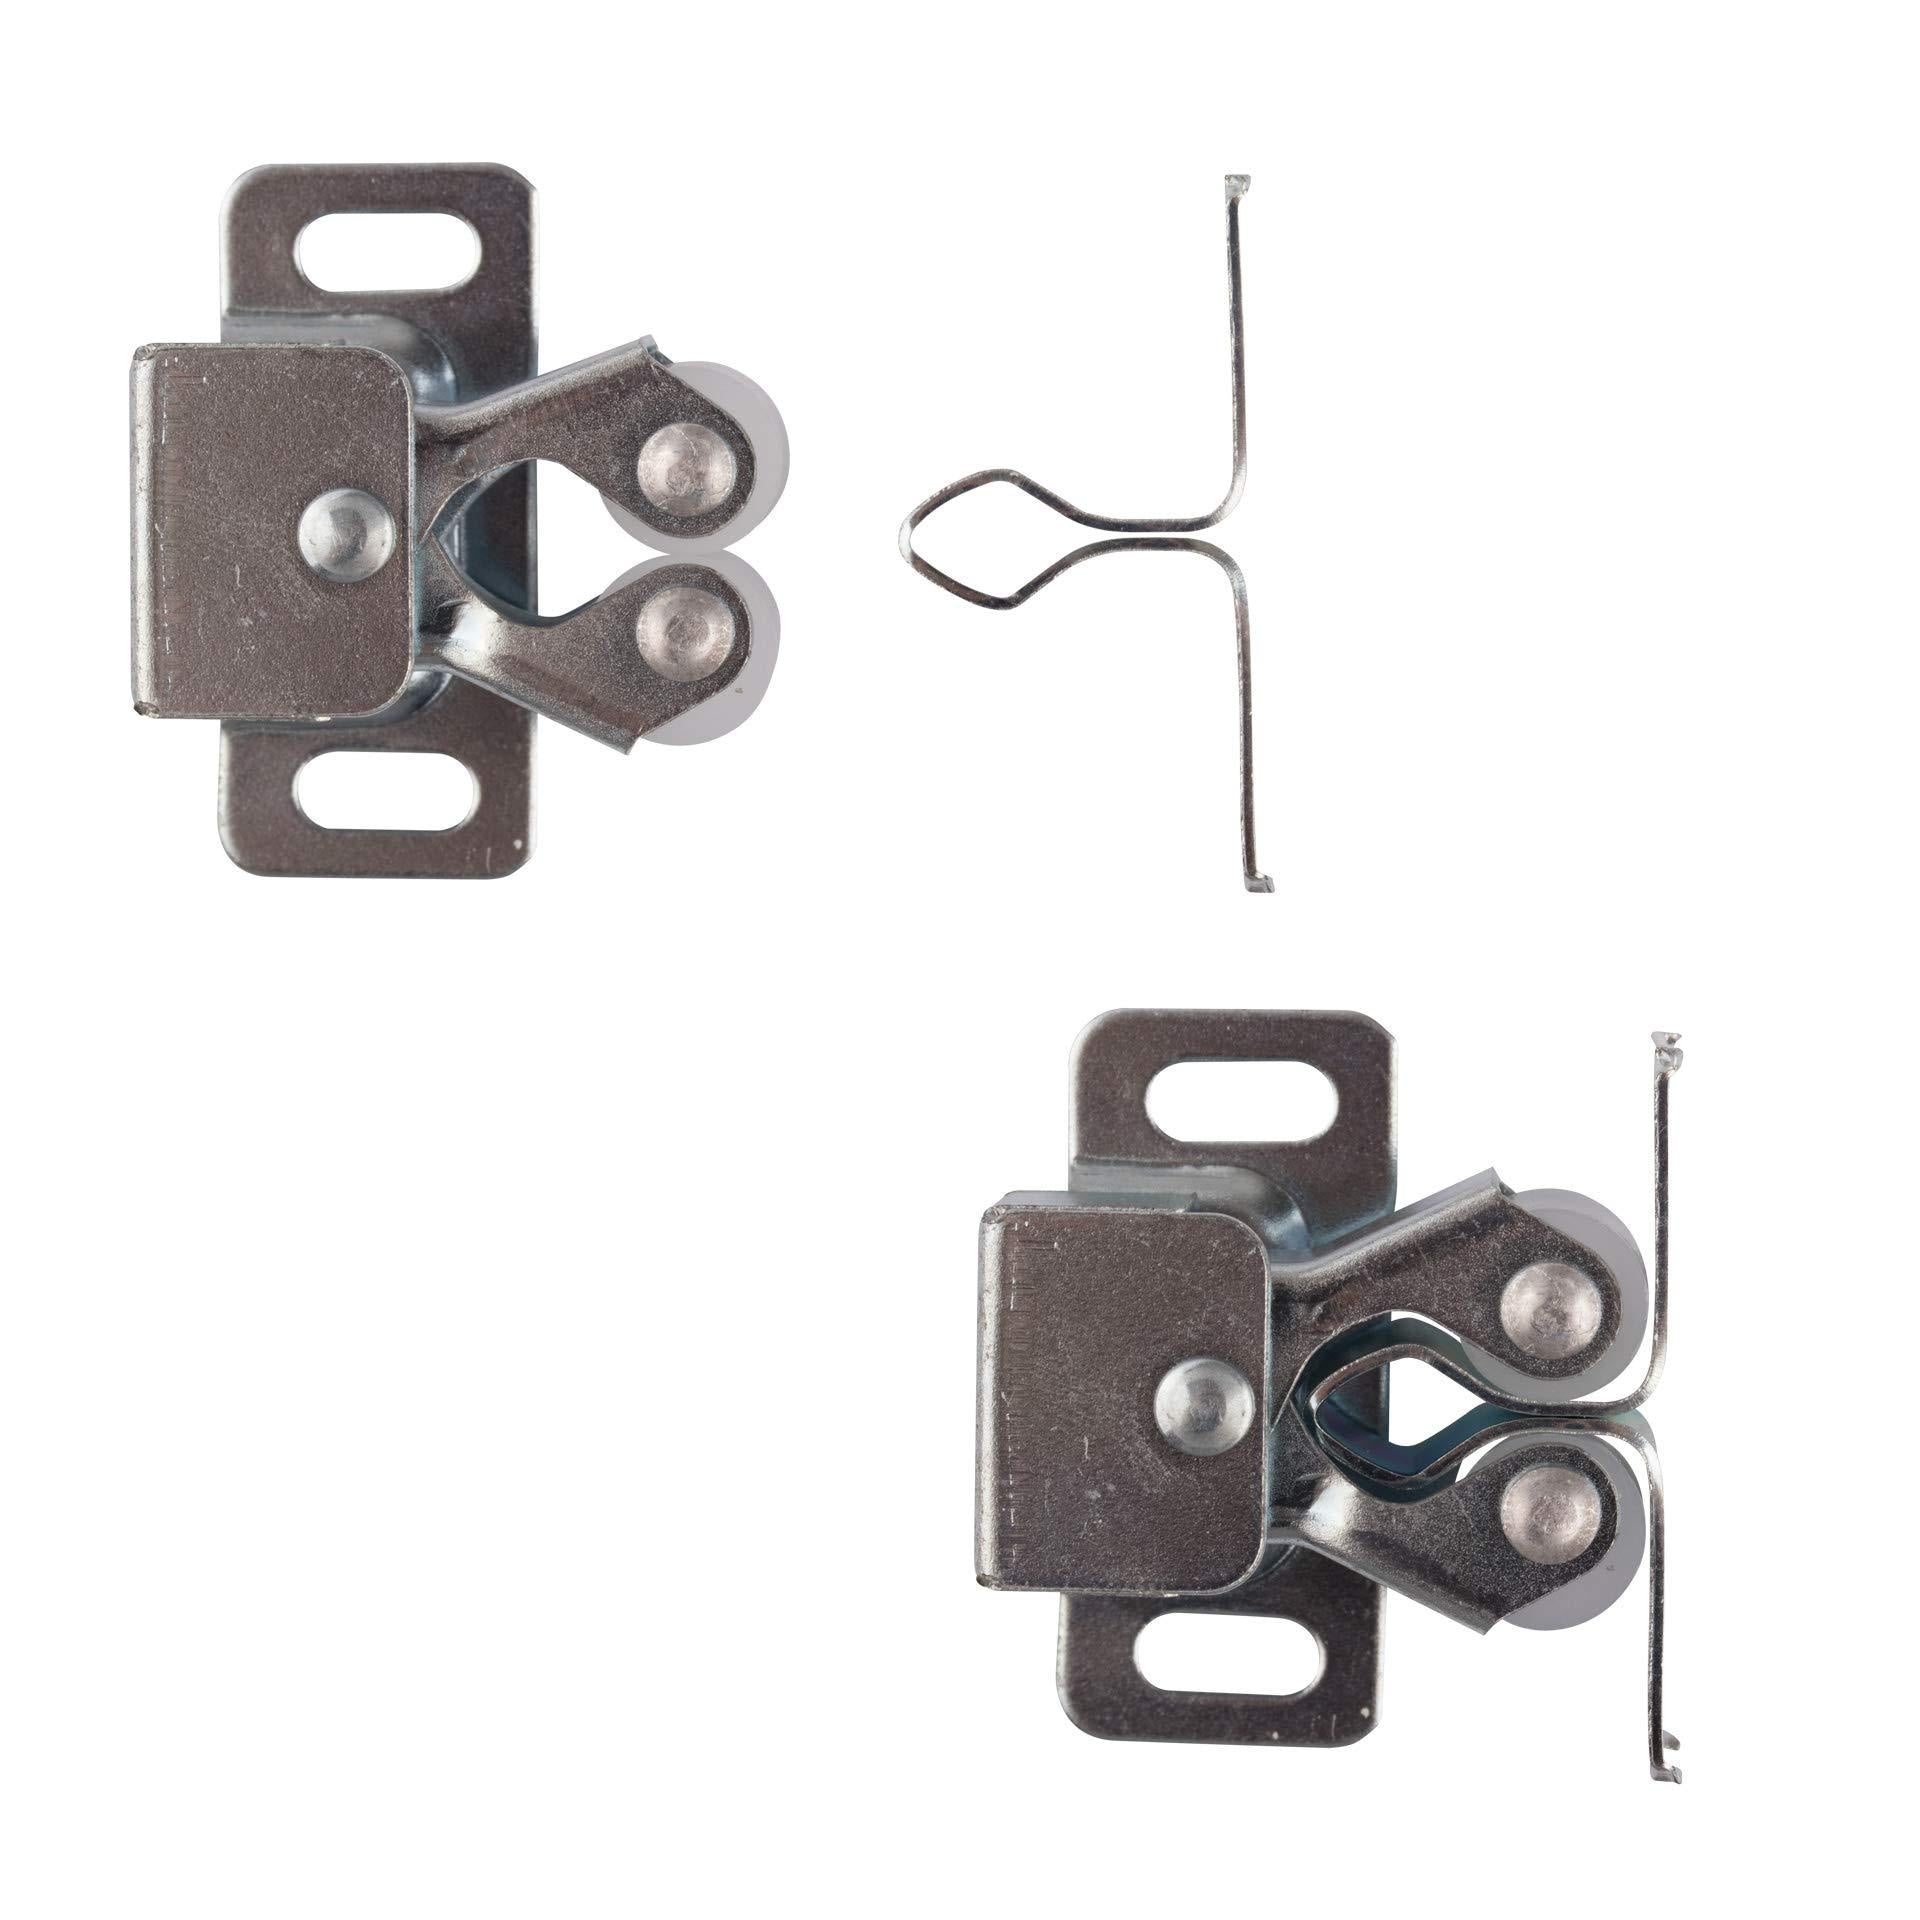 LouMaxx Möbelschnapper 5er Set – Schnappschloss - Tür Verschluss - Möbelschnäpper - Rollenschnäpper - Stabiler Türverschluss oder Möbelverschluss